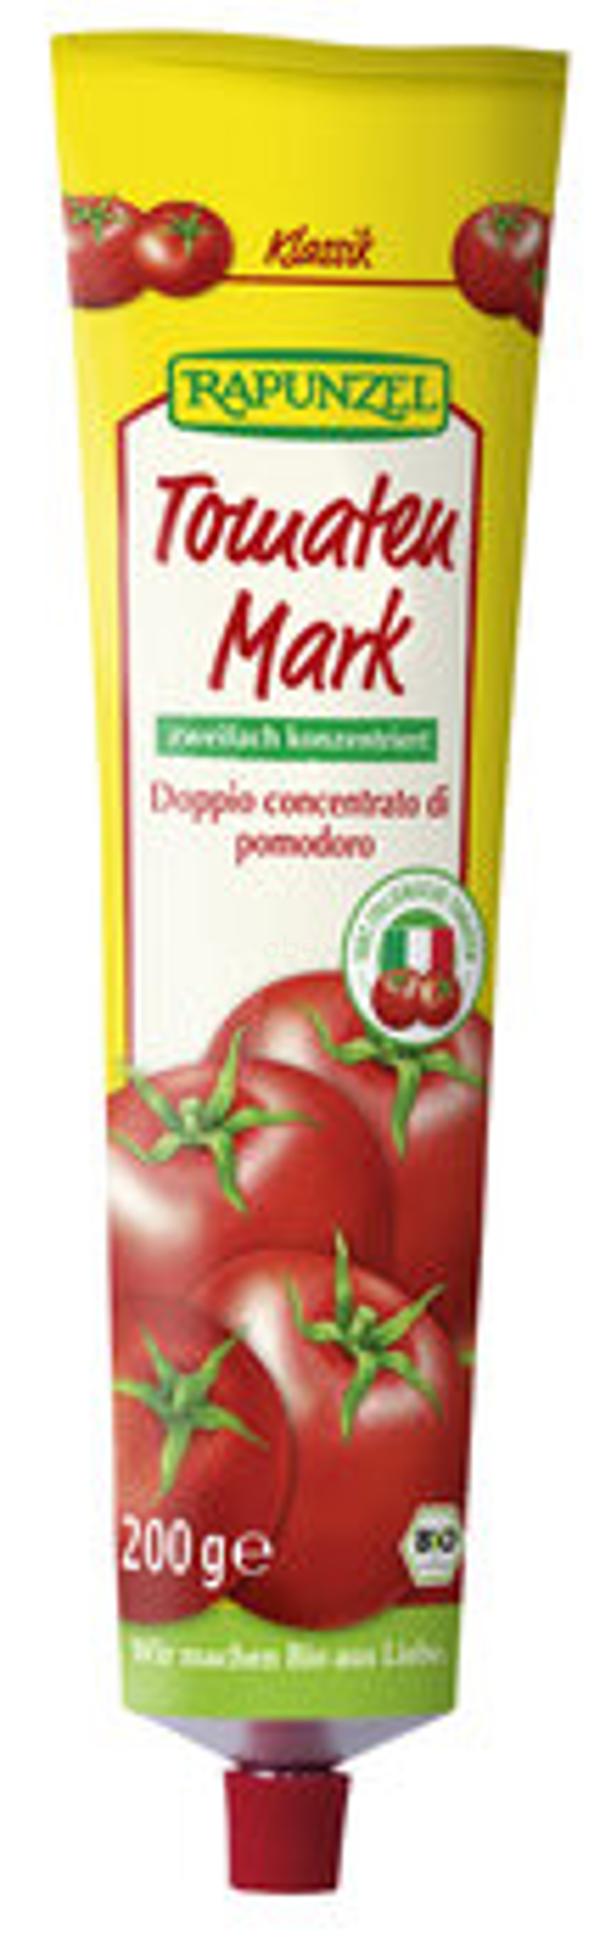 Produktfoto zu Tomatenmark Tube 200g